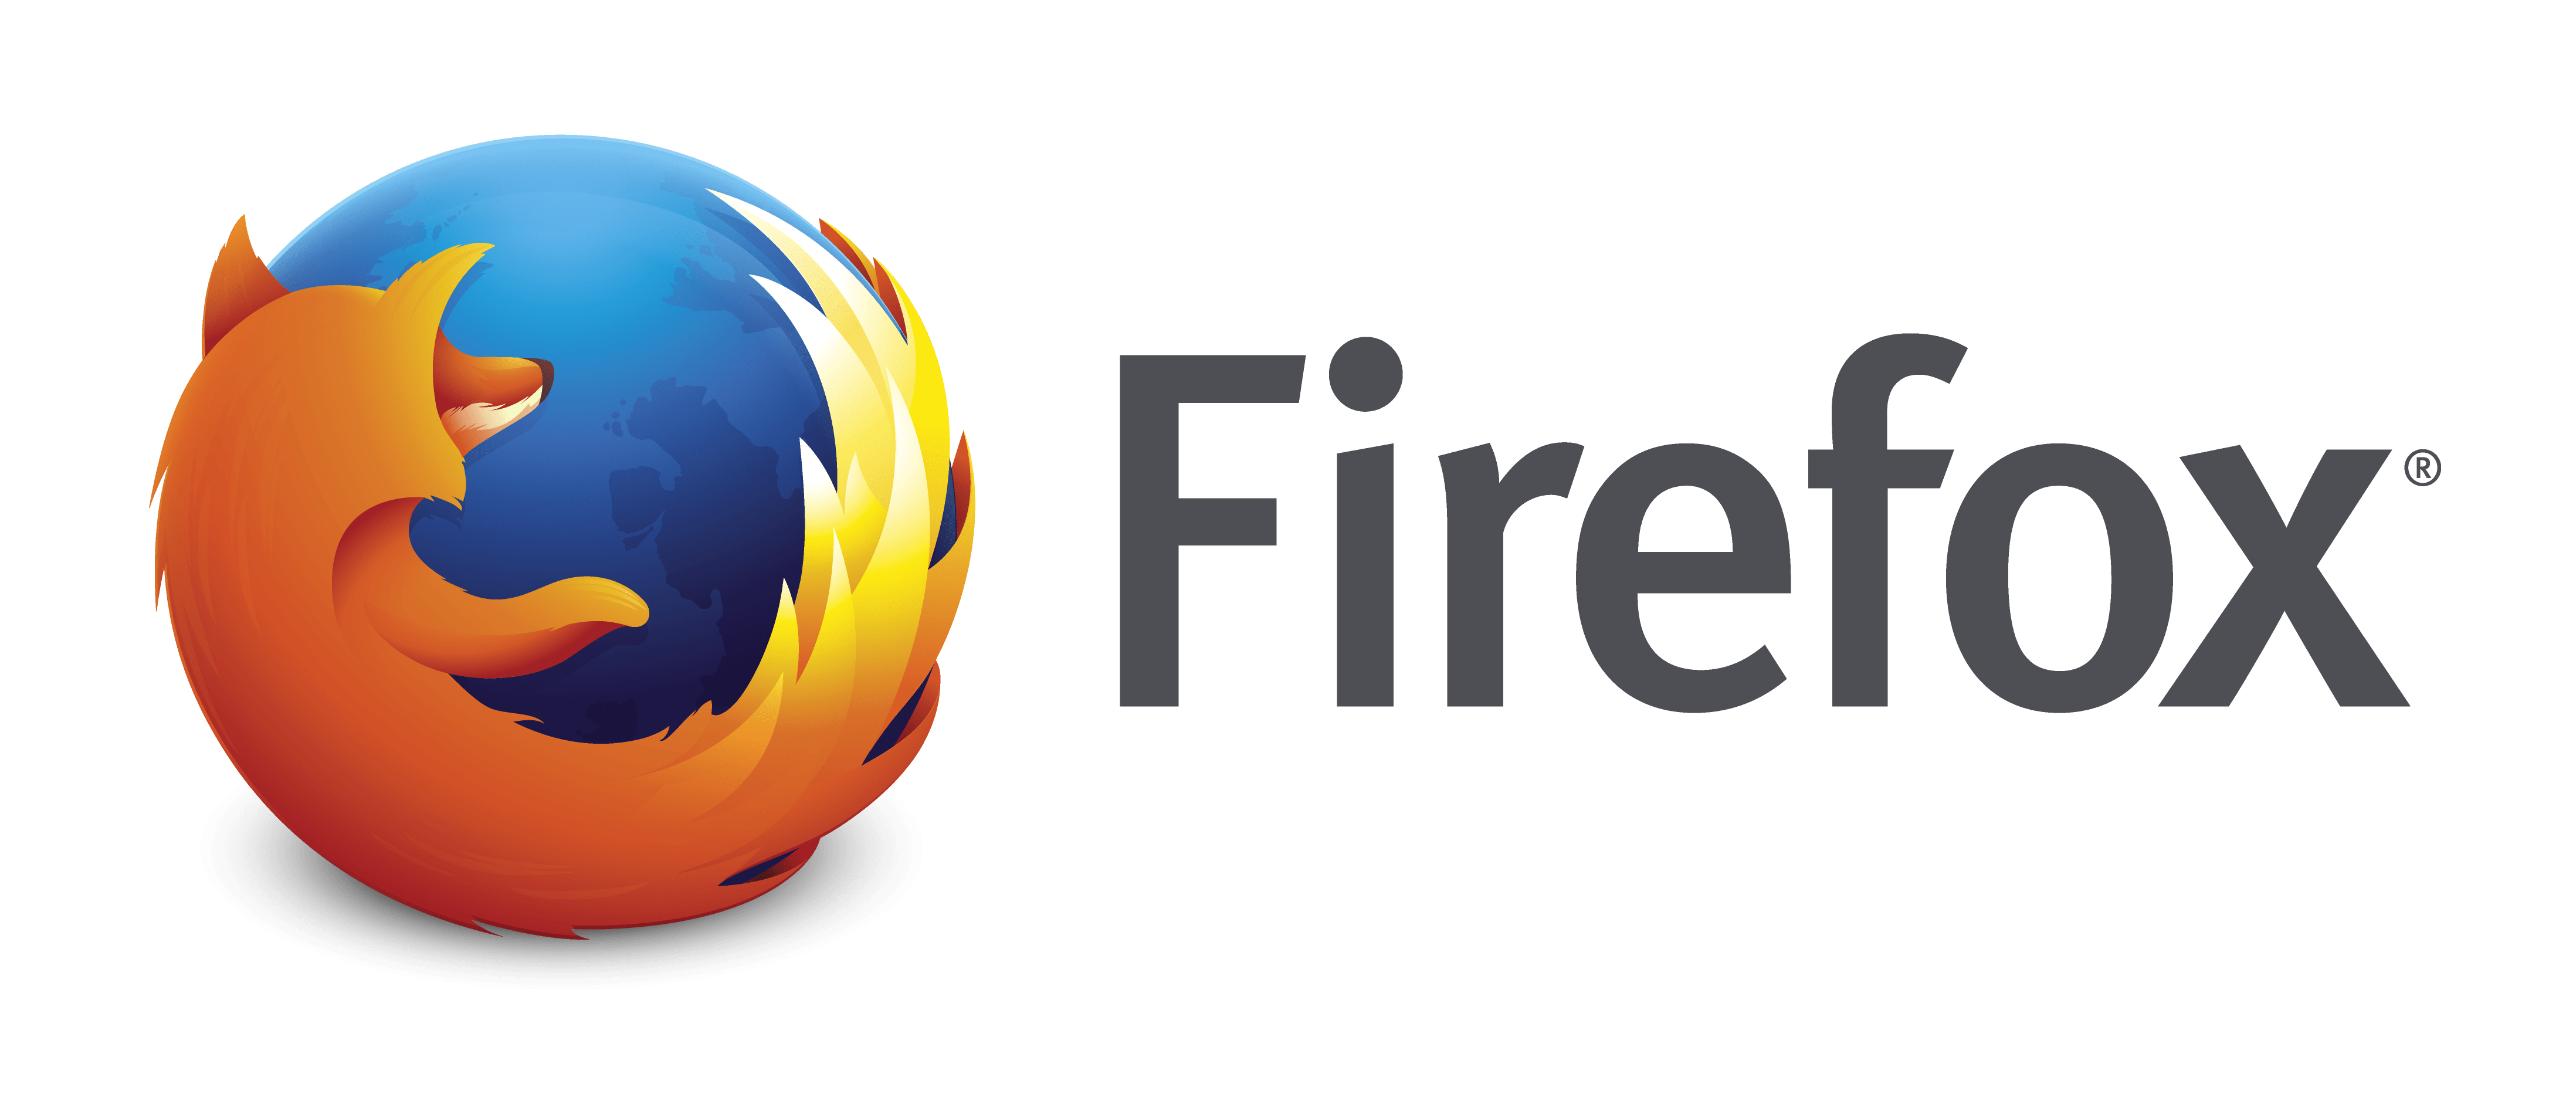 U0027Mozilla Firefoxu0027 Tarayıcısında U0027Npapiu0027 Desteği Nasıl Etkinleştirilir? - Mozilla Firefox, Transparent background PNG HD thumbnail